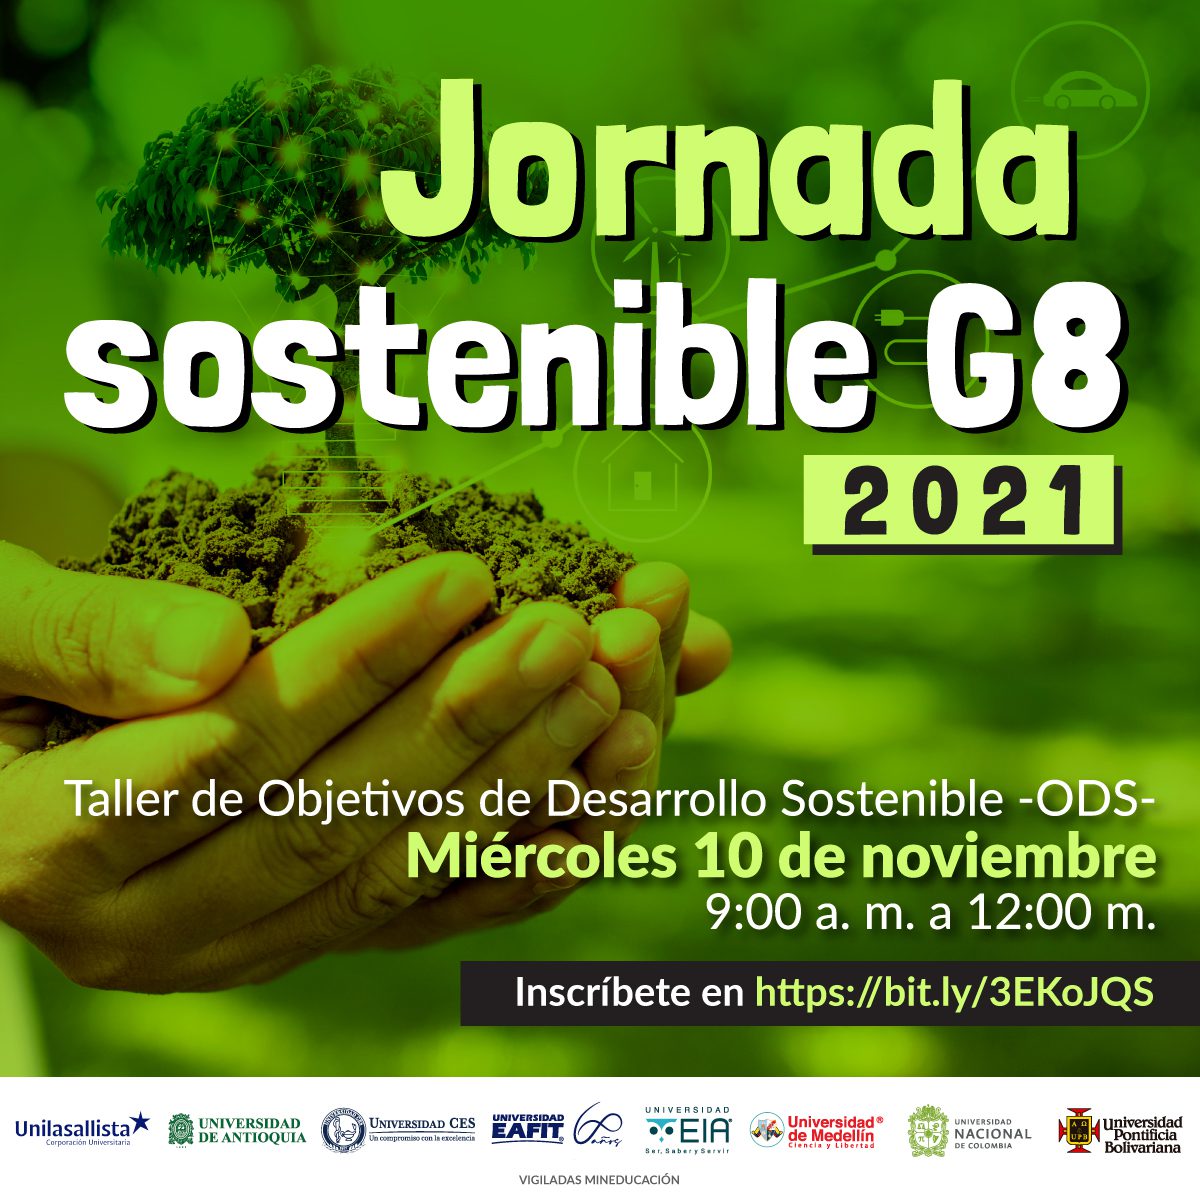 Invitación a la Jornada Sostenible G8